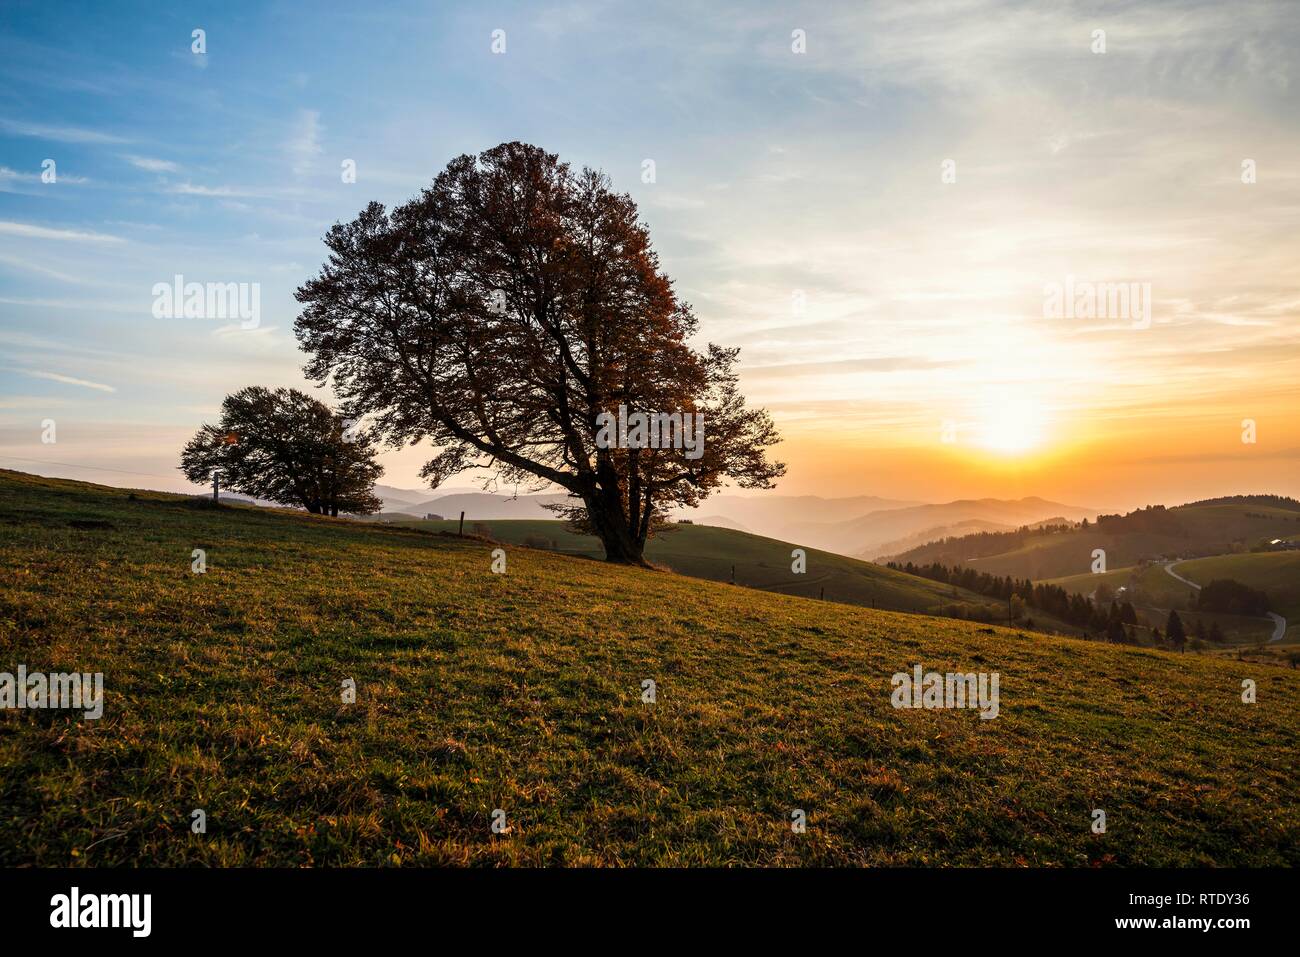 Les pâturages du bois de hêtres (Fagus) à l'automne en face d'un paysage vallonné, coucher de soleil, Schauinsland, Forêt-Noire, Bade-Wurtemberg Banque D'Images